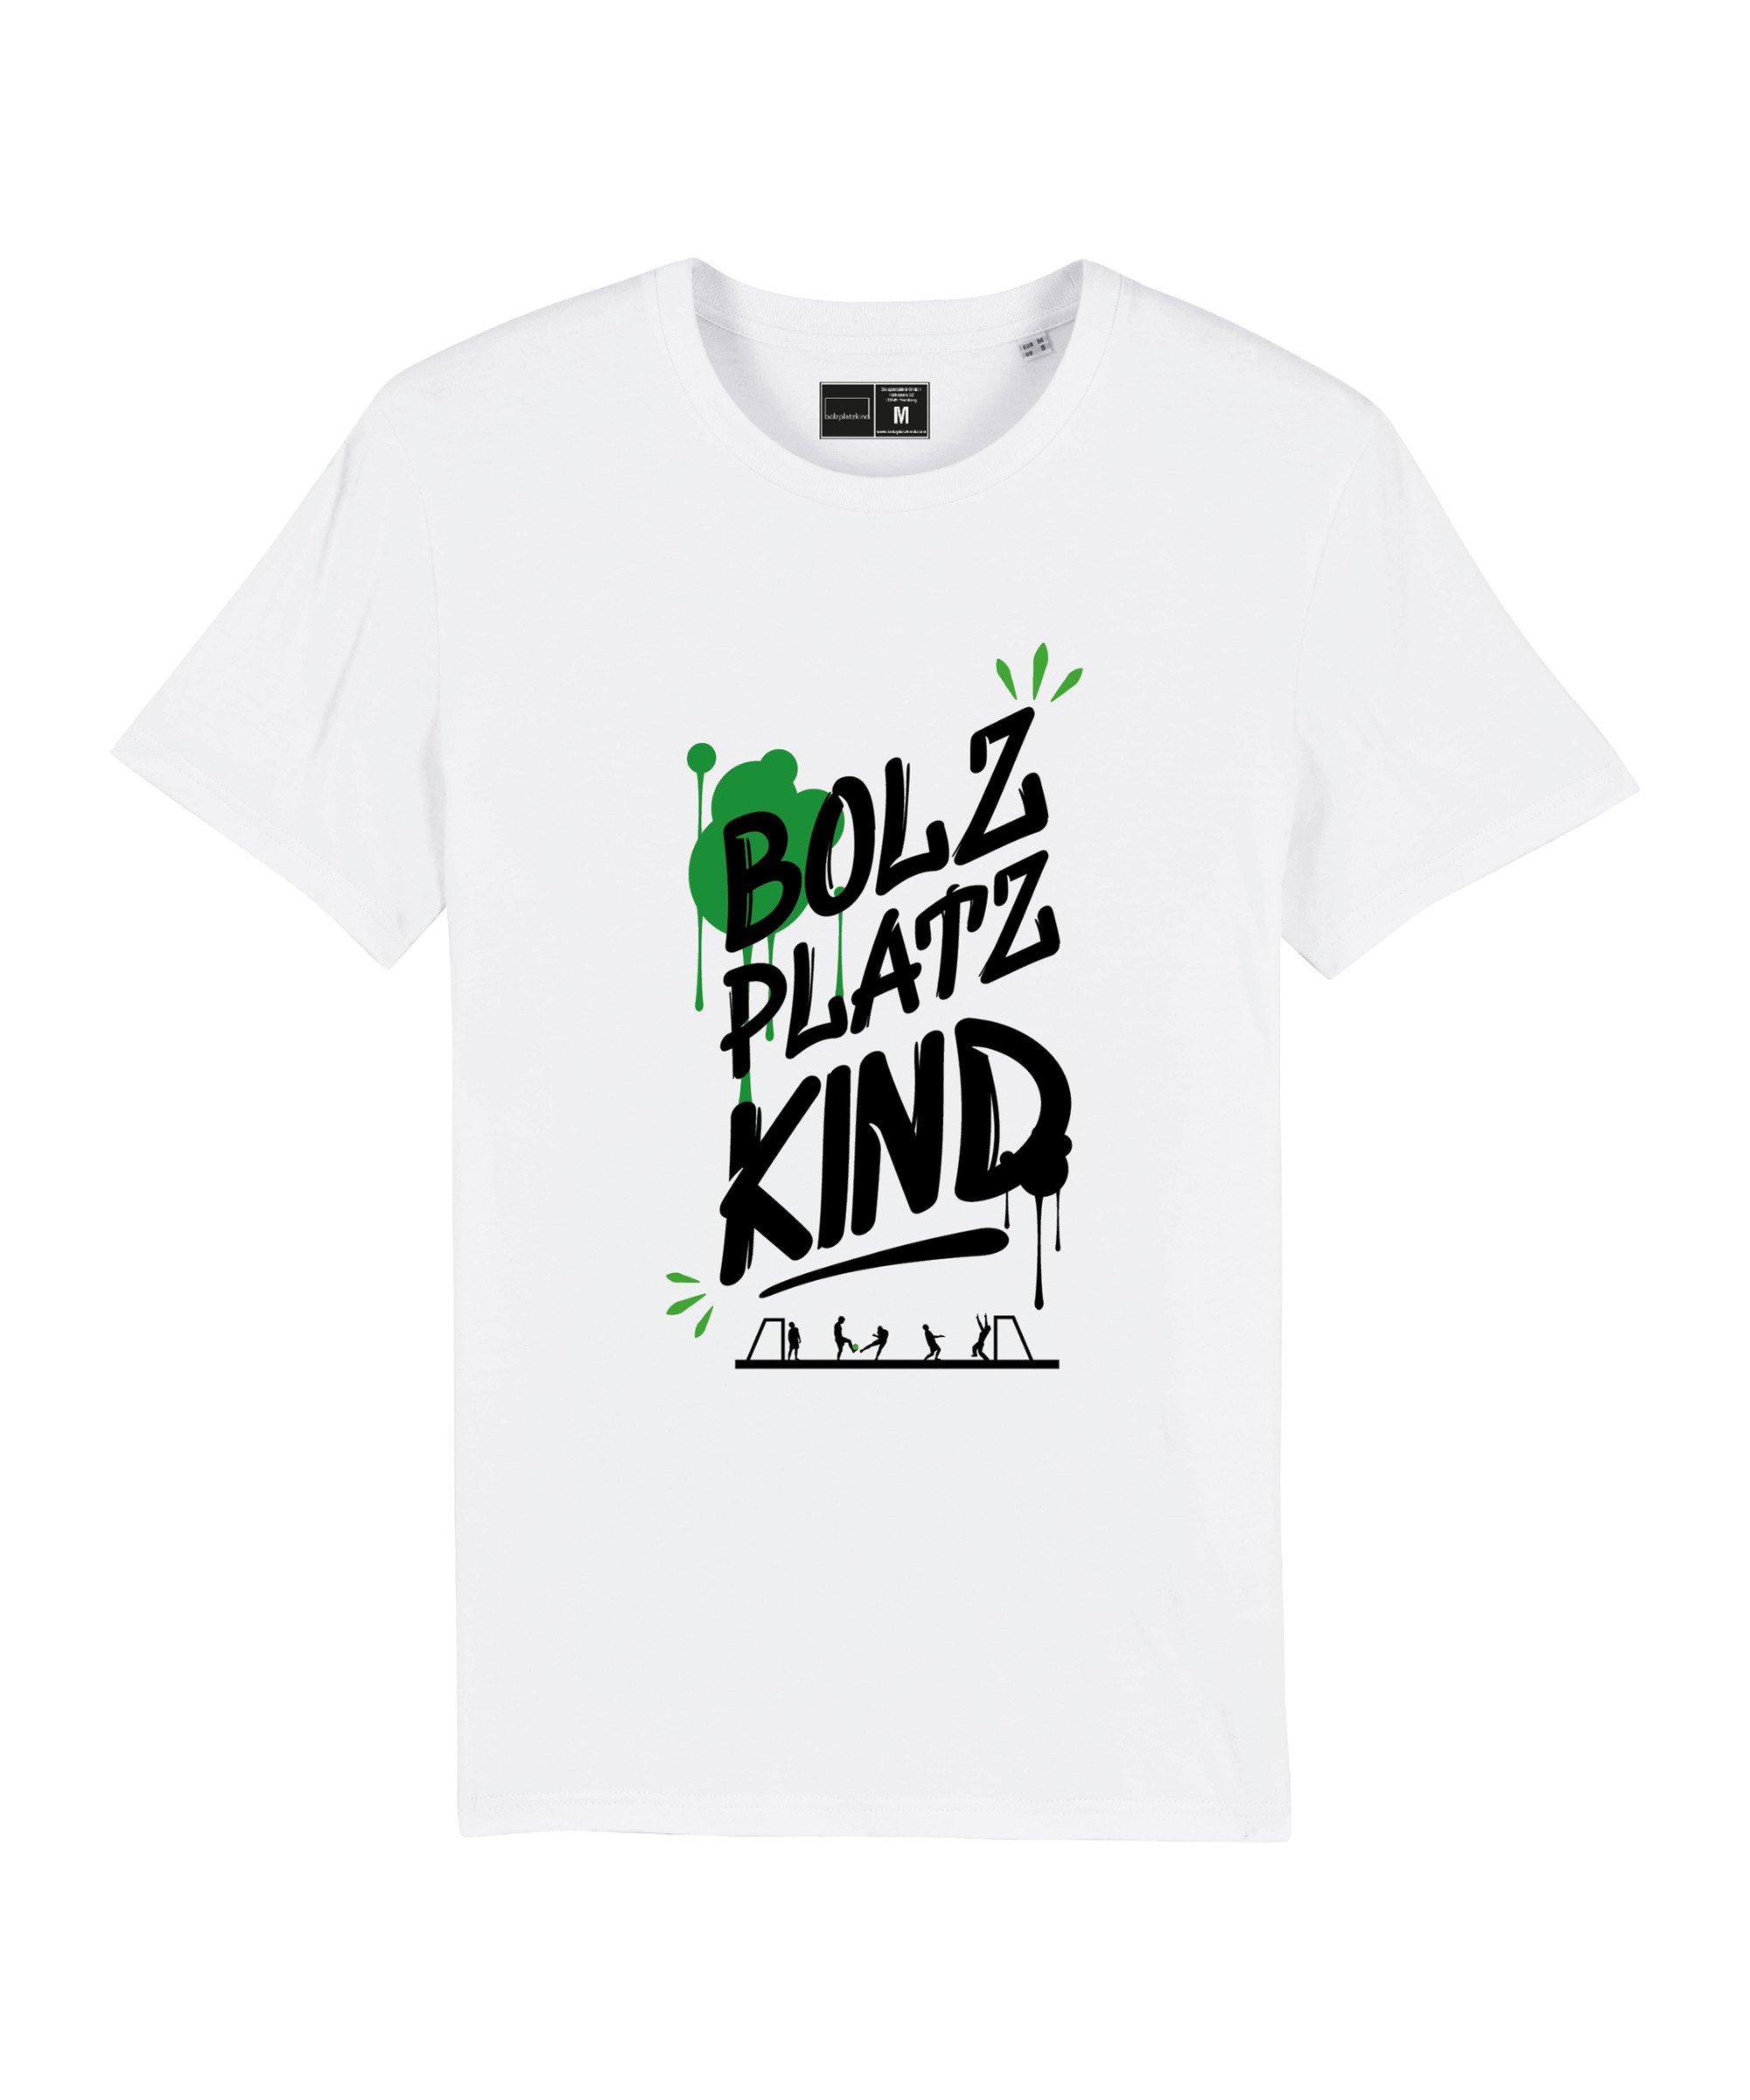 Produkt T-Shirt "Graffiti" Nachhaltiges T-Shirt weiss Bolzplatzkind